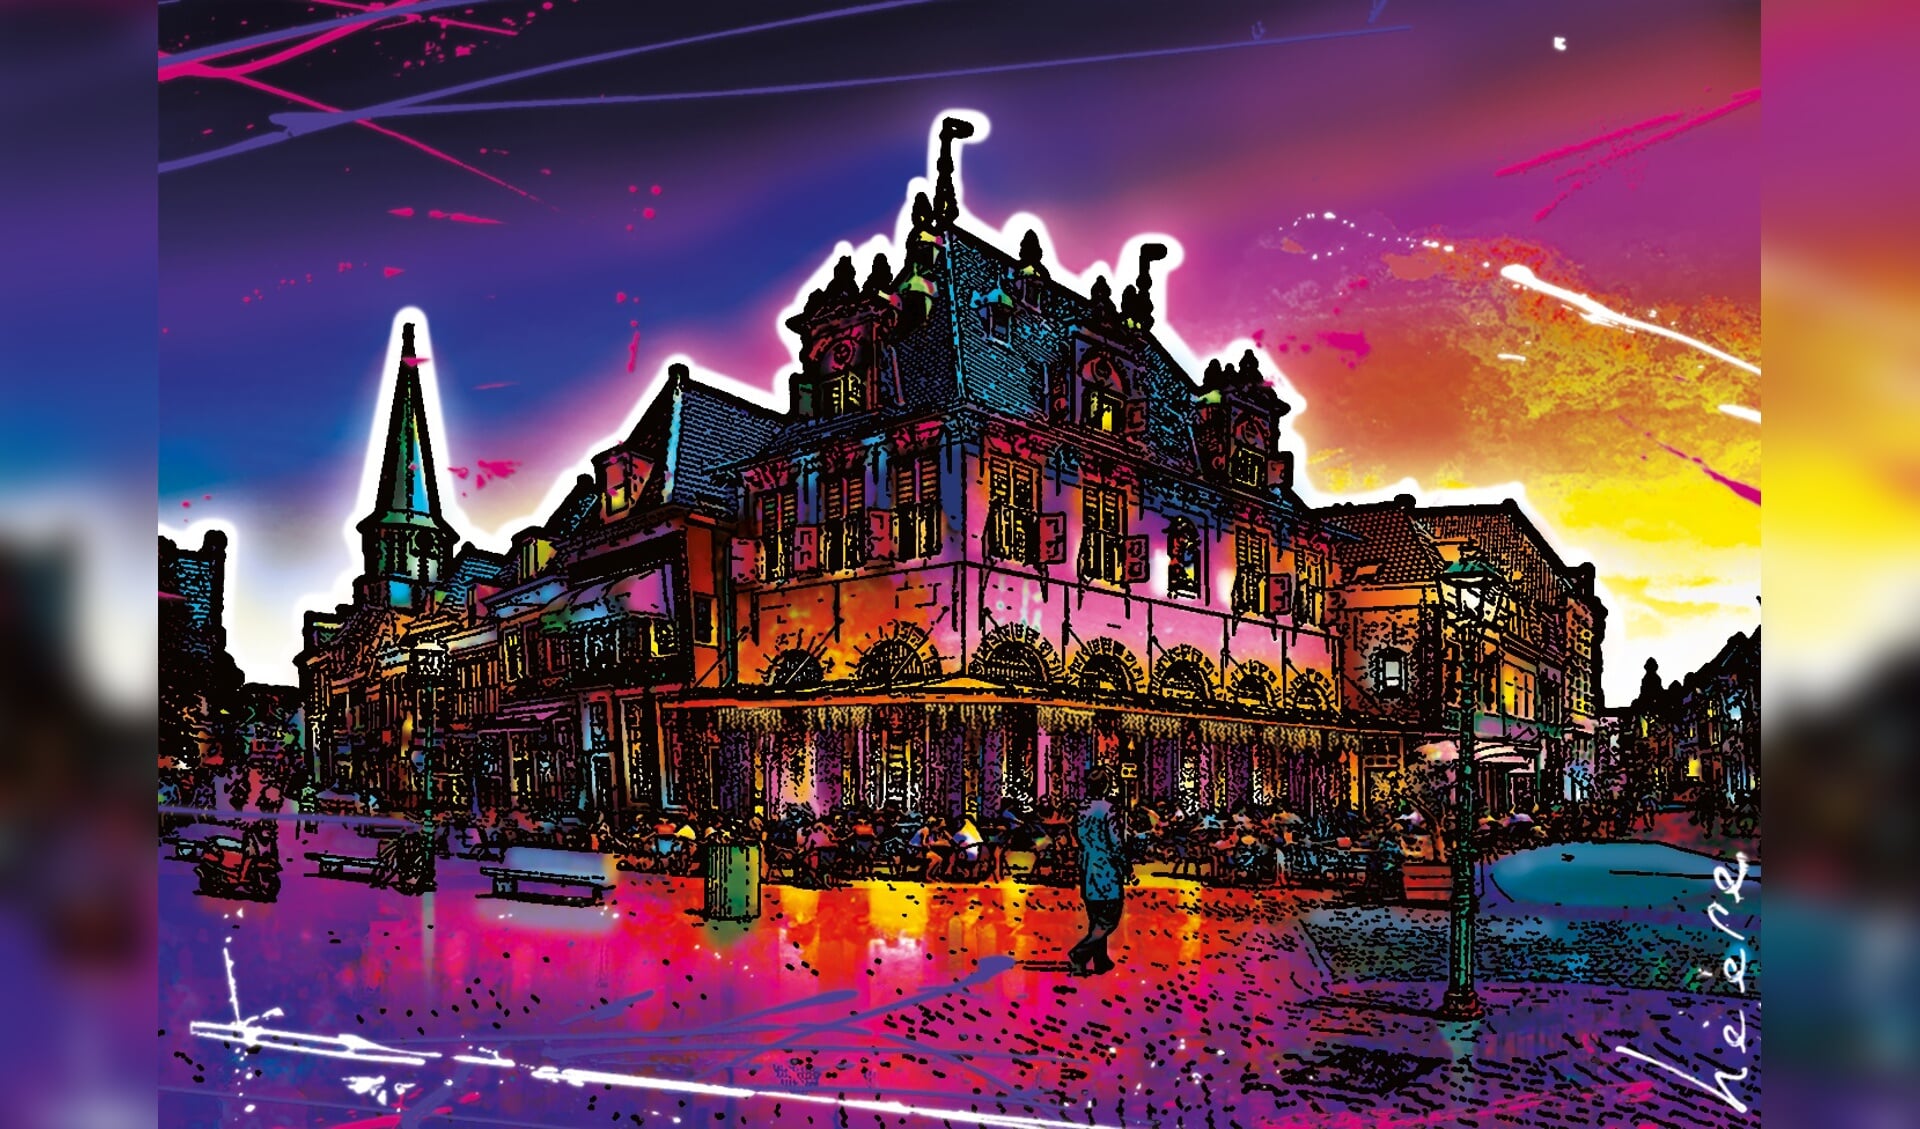 Kleurrijk stadsgezicht Hoorn door Raymond Heere. (Afbeelding aangeleverd)